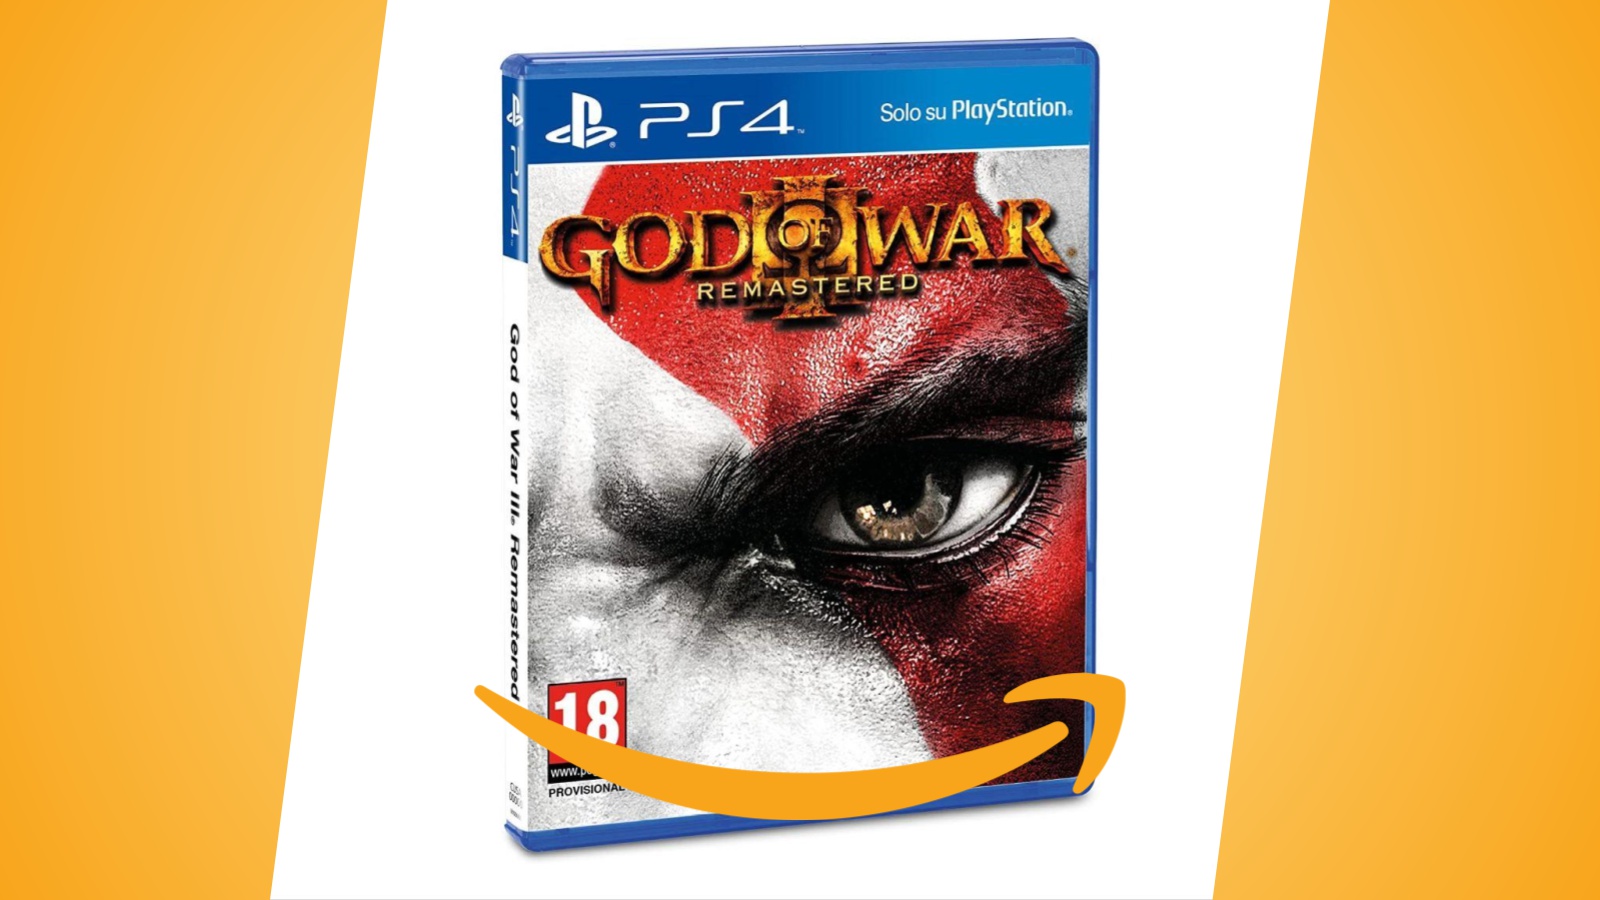 Offerte Amazon: God of War III Remastered per PS4 al prezzo minimo storico, in forte sconto